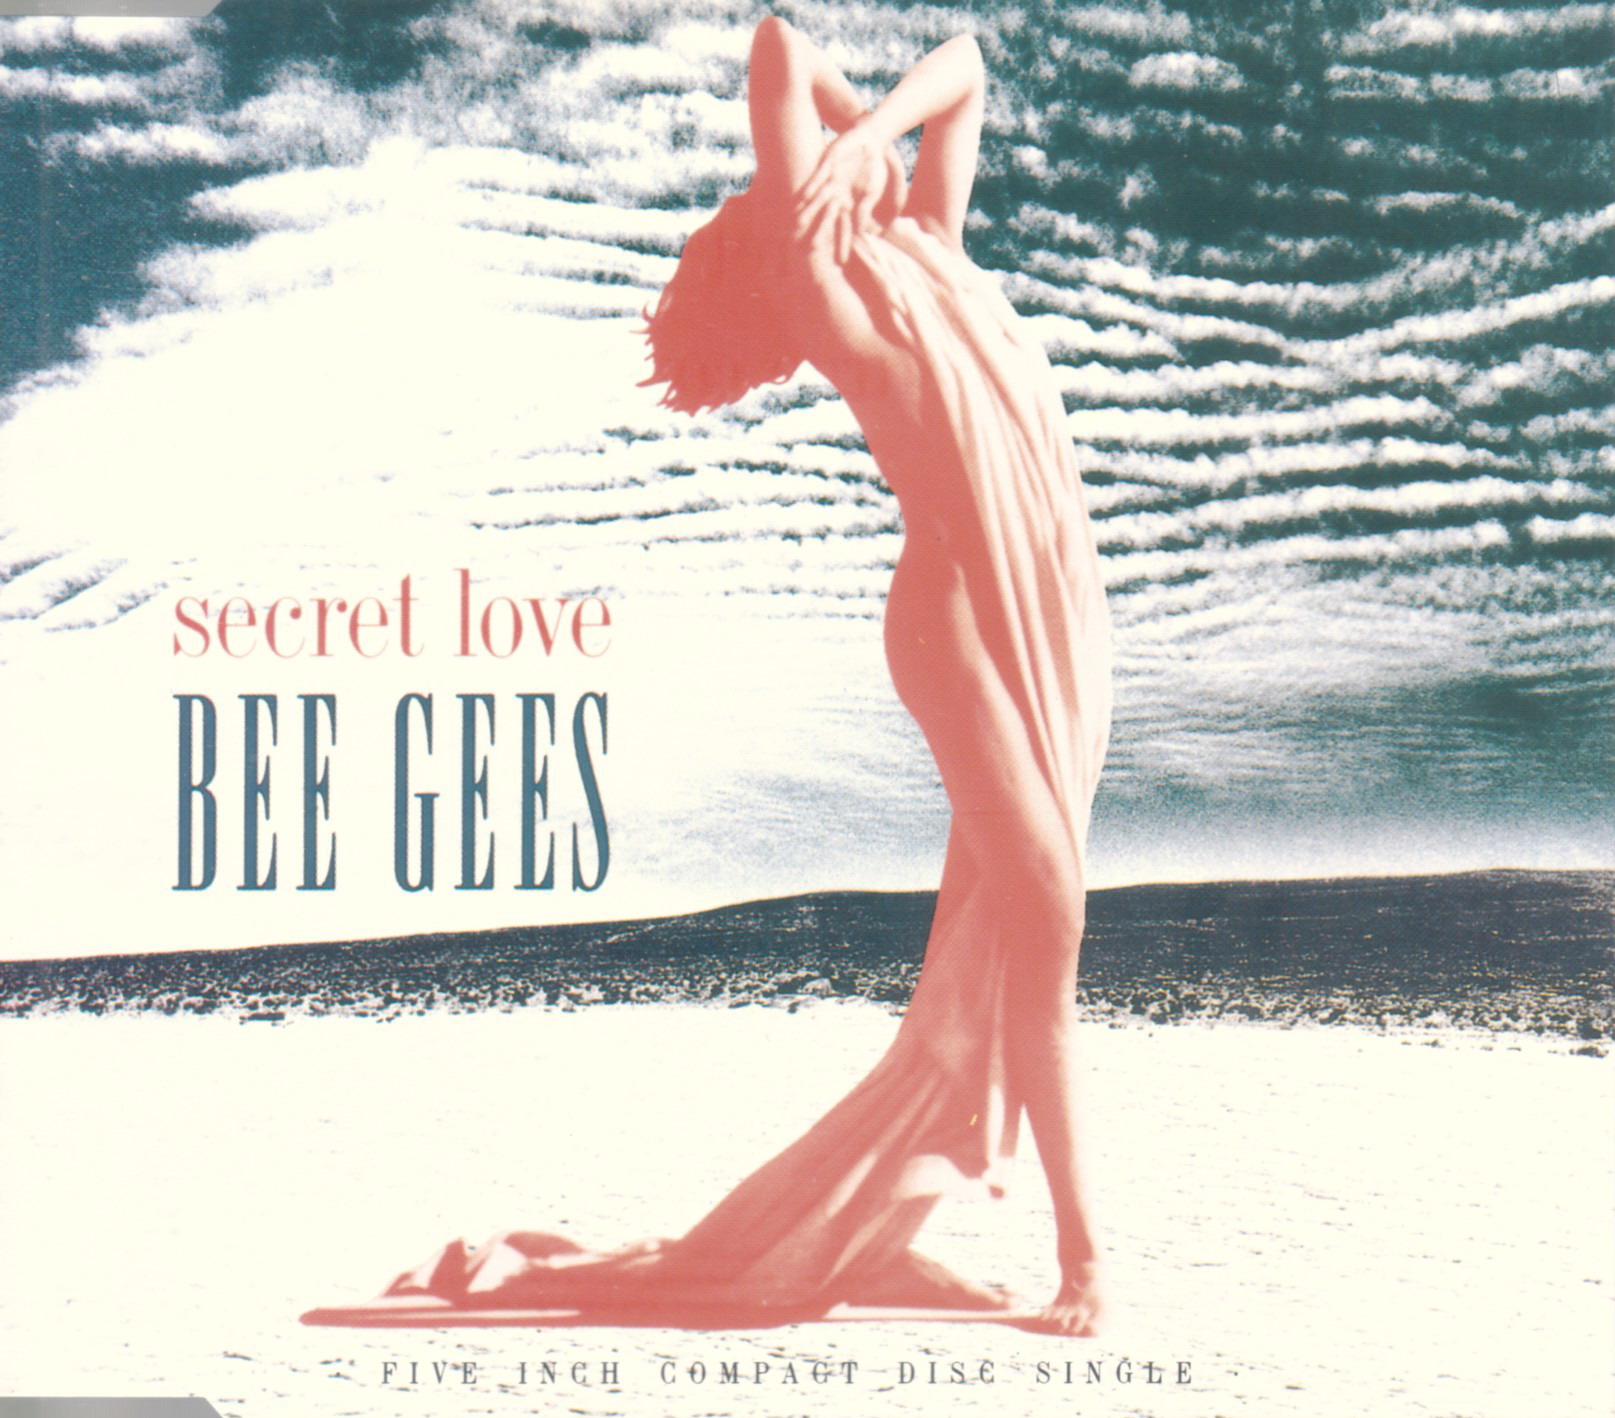 Bee Gees - Secret Love - dutchcharts.nl